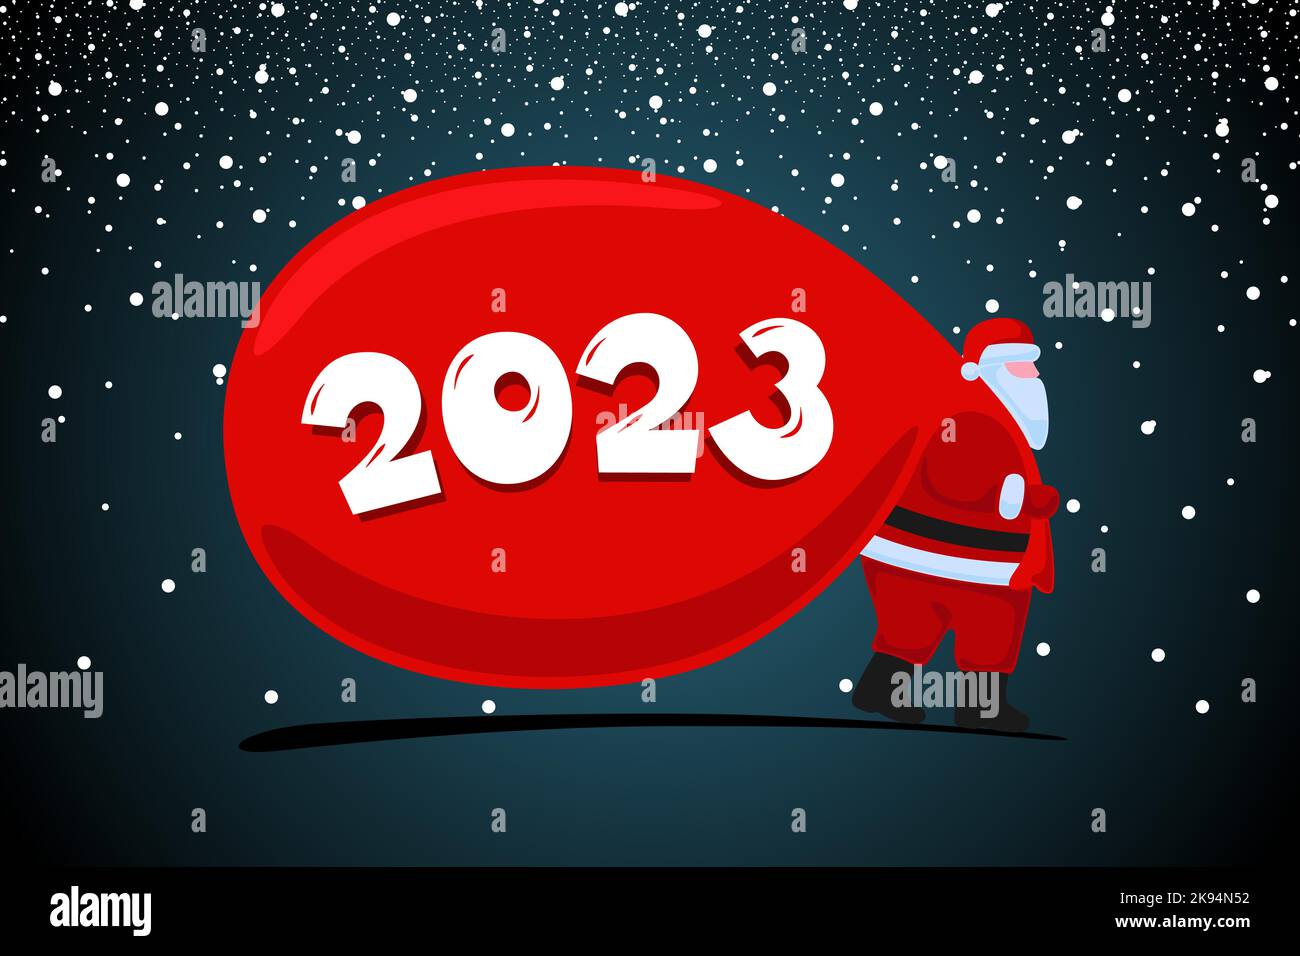 Weihnachtsmann Cartoon-Figur kommen und trägt große schwere Geschenke rote Tasche. Weihnachten und ein glückliches neues Jahr 2023 Weihnachtskarte. Vektor eps Feier Kalender Poster Illustration Stock Vektor